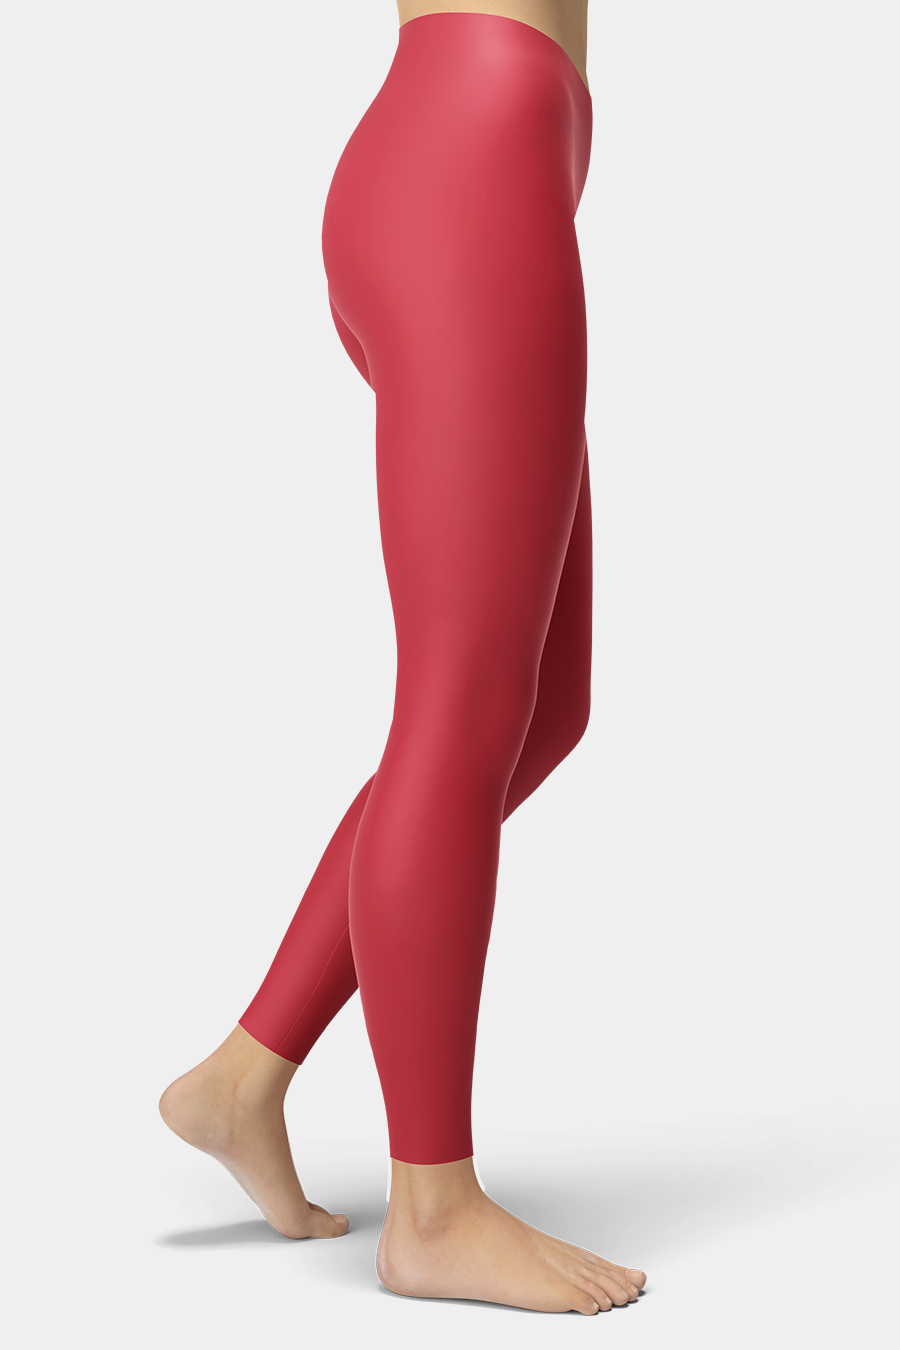 Fashion Red Leggings - SeeMyLeggings